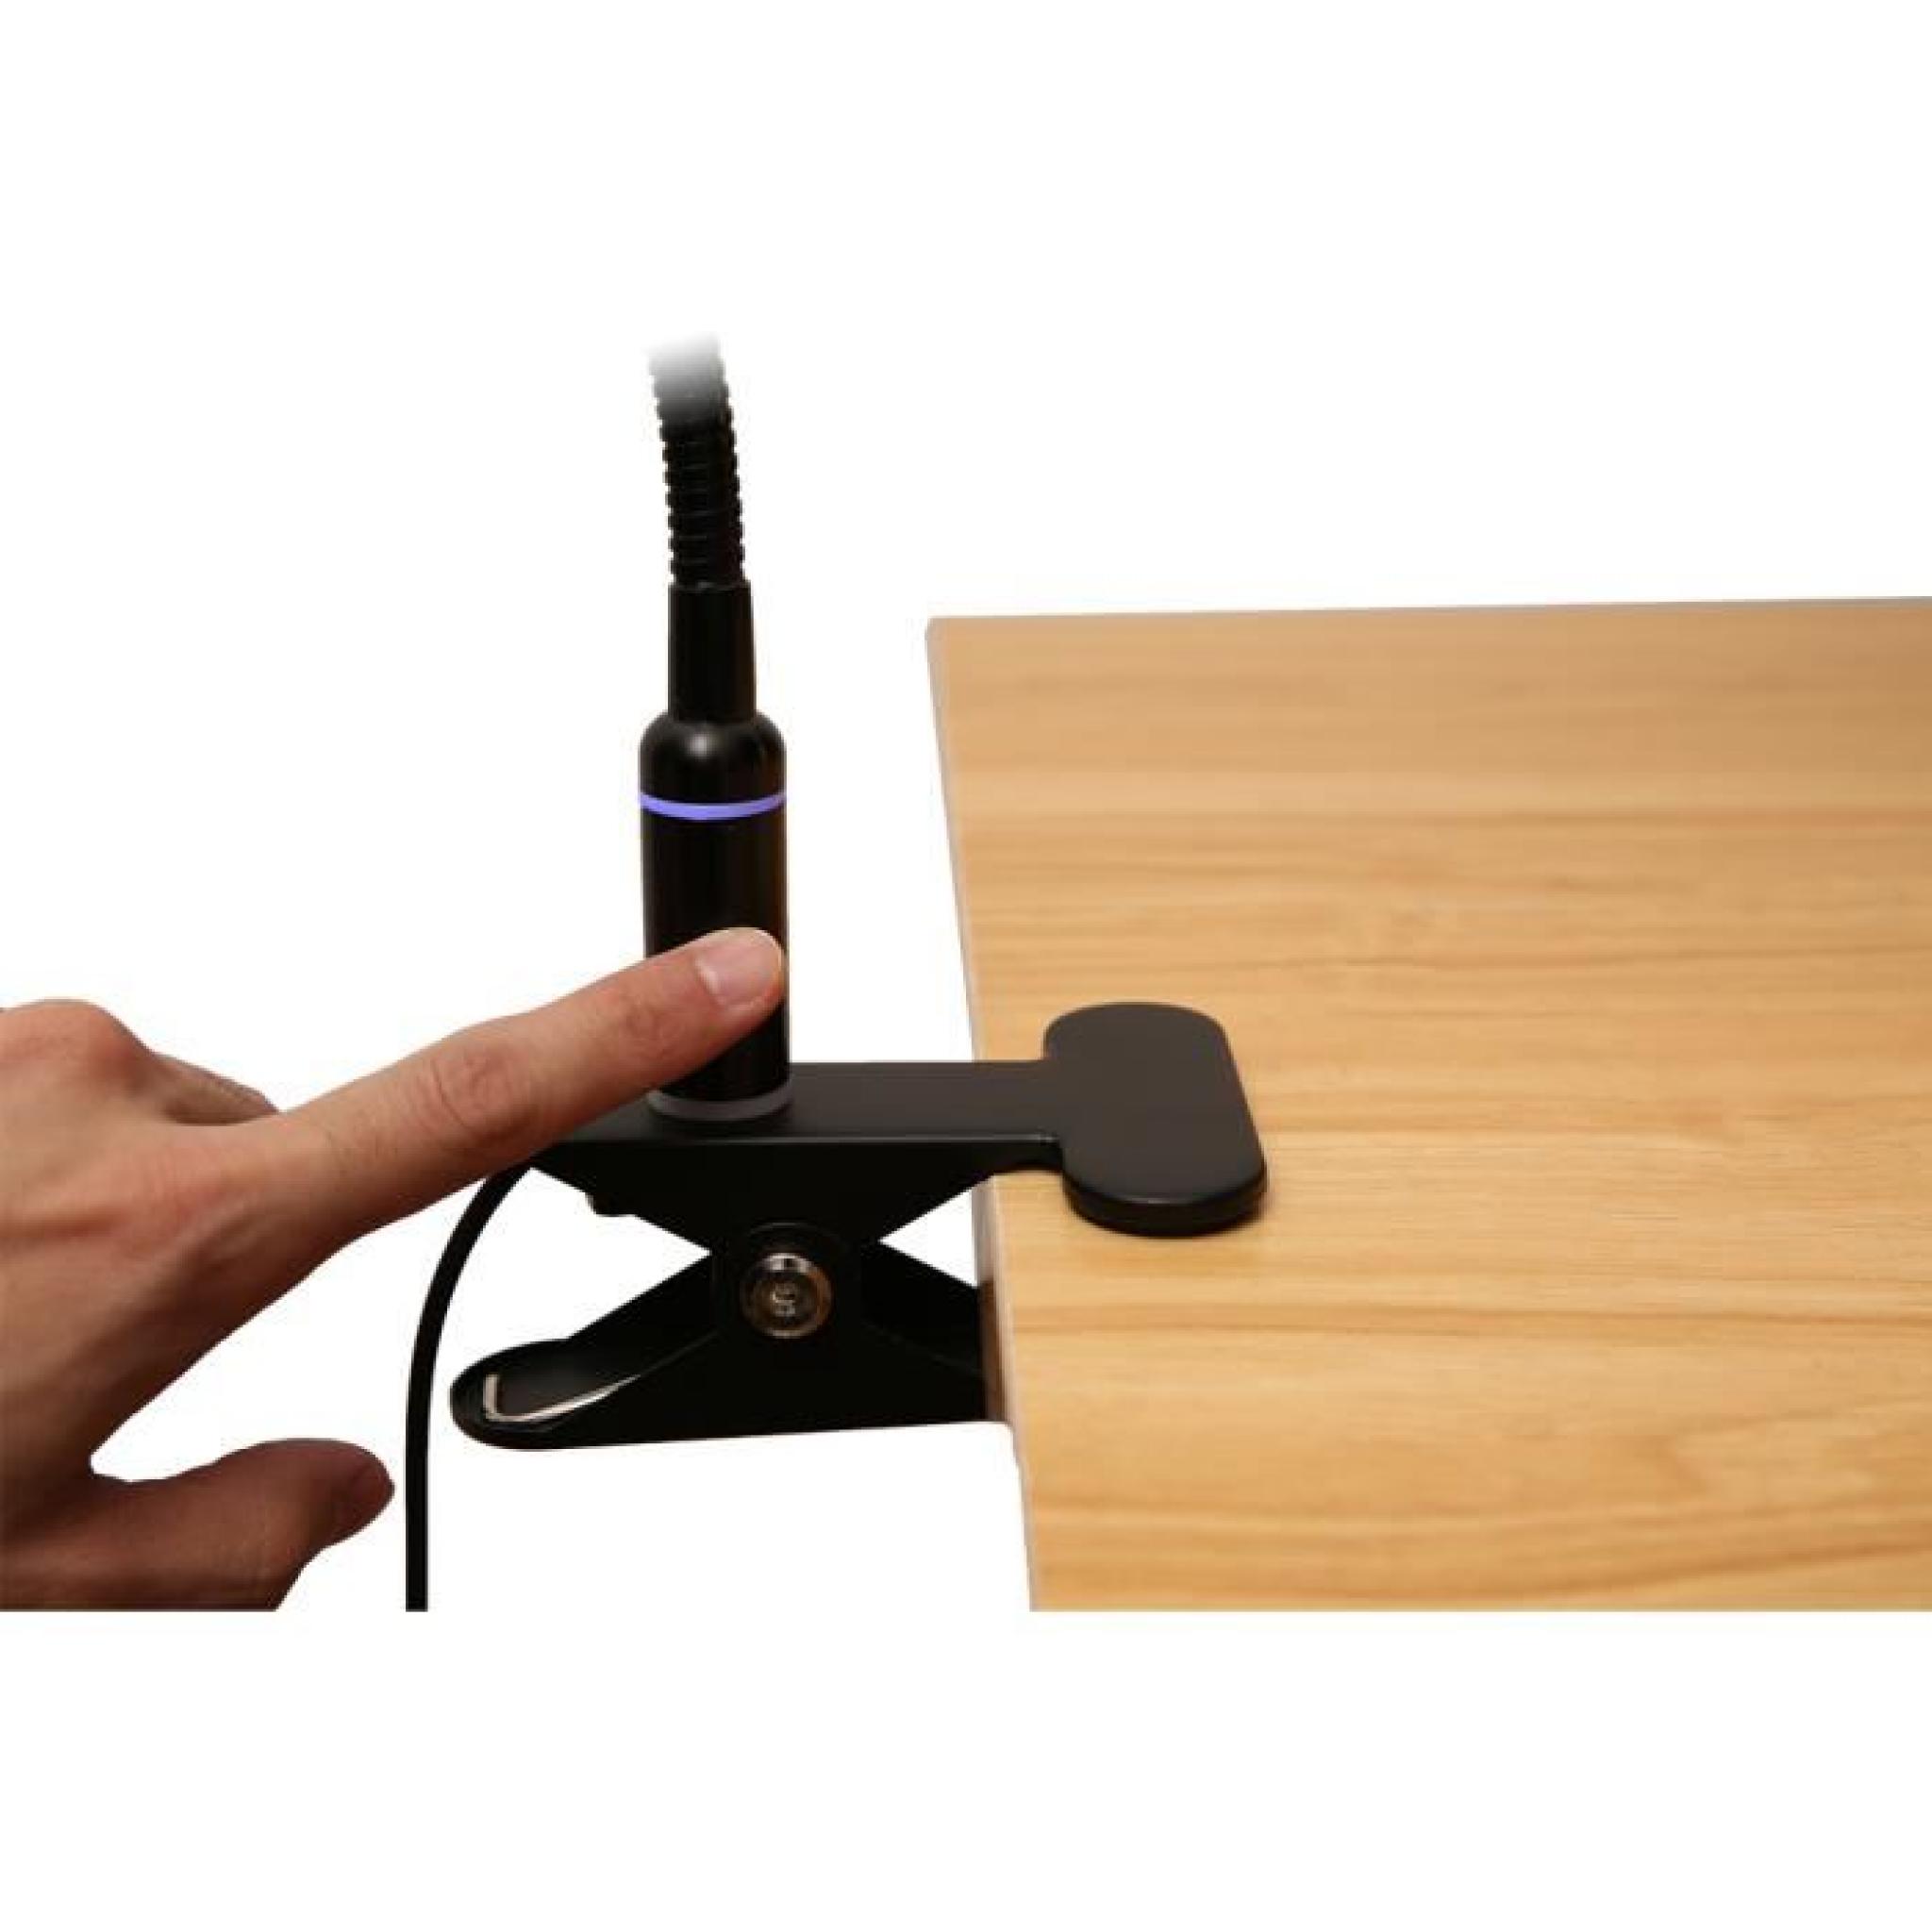 Excelvan LED Lampe de Lecture Flexible à Pince Noir Touch Control 3W (Blanc Chaud) pas cher